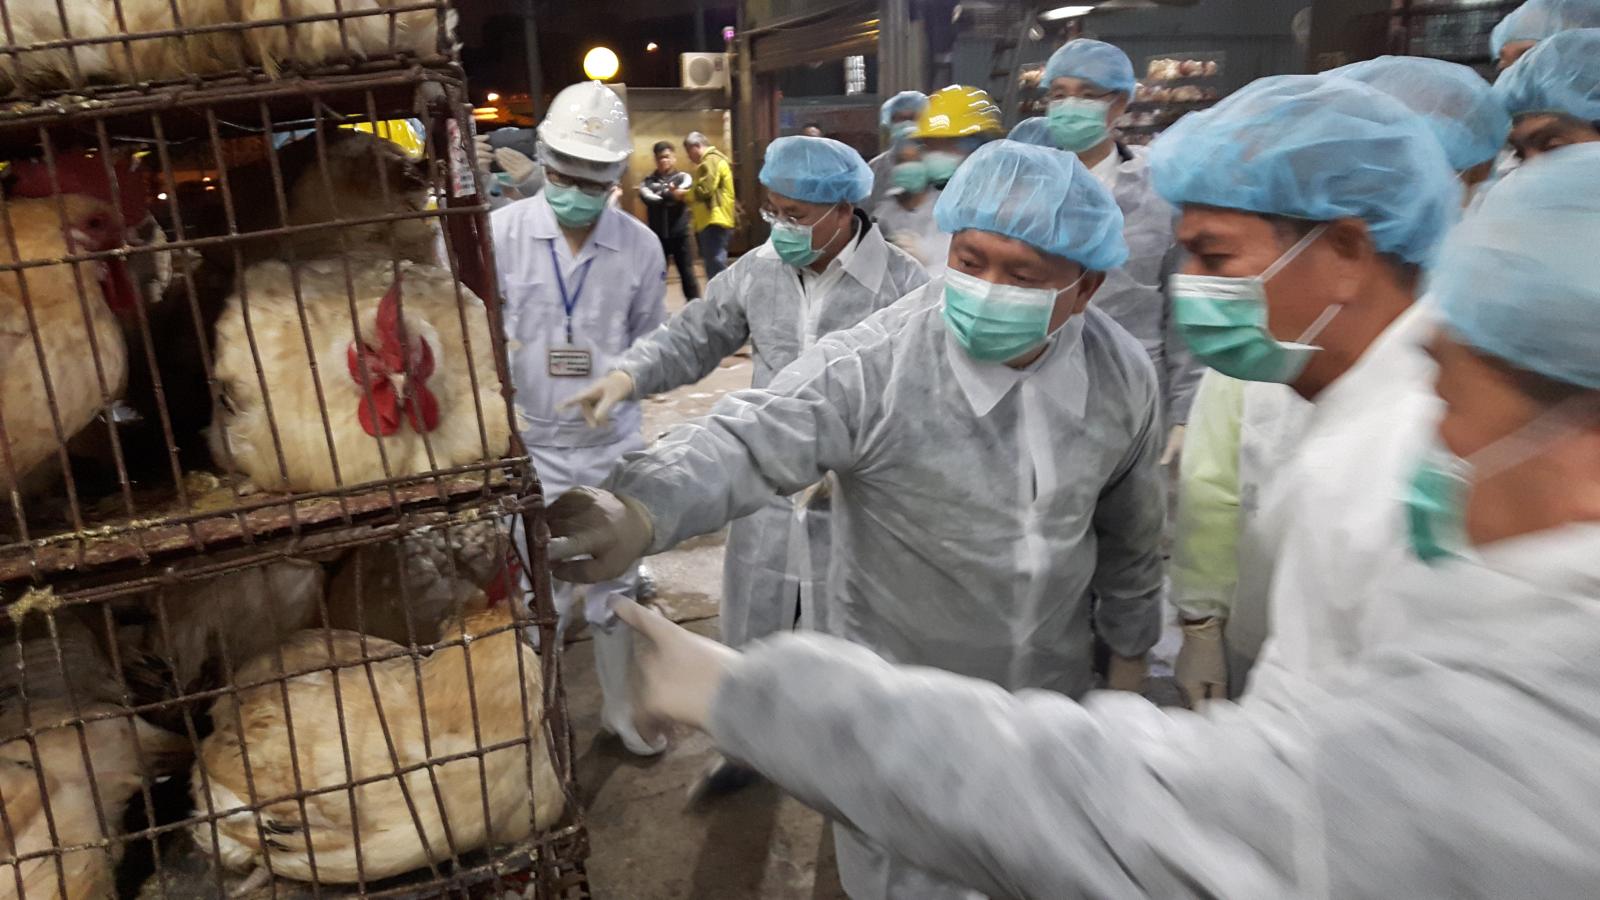 農委會林主委視察家禽交易場 宣布多項強化防疫新措施 | 文章內置圖片